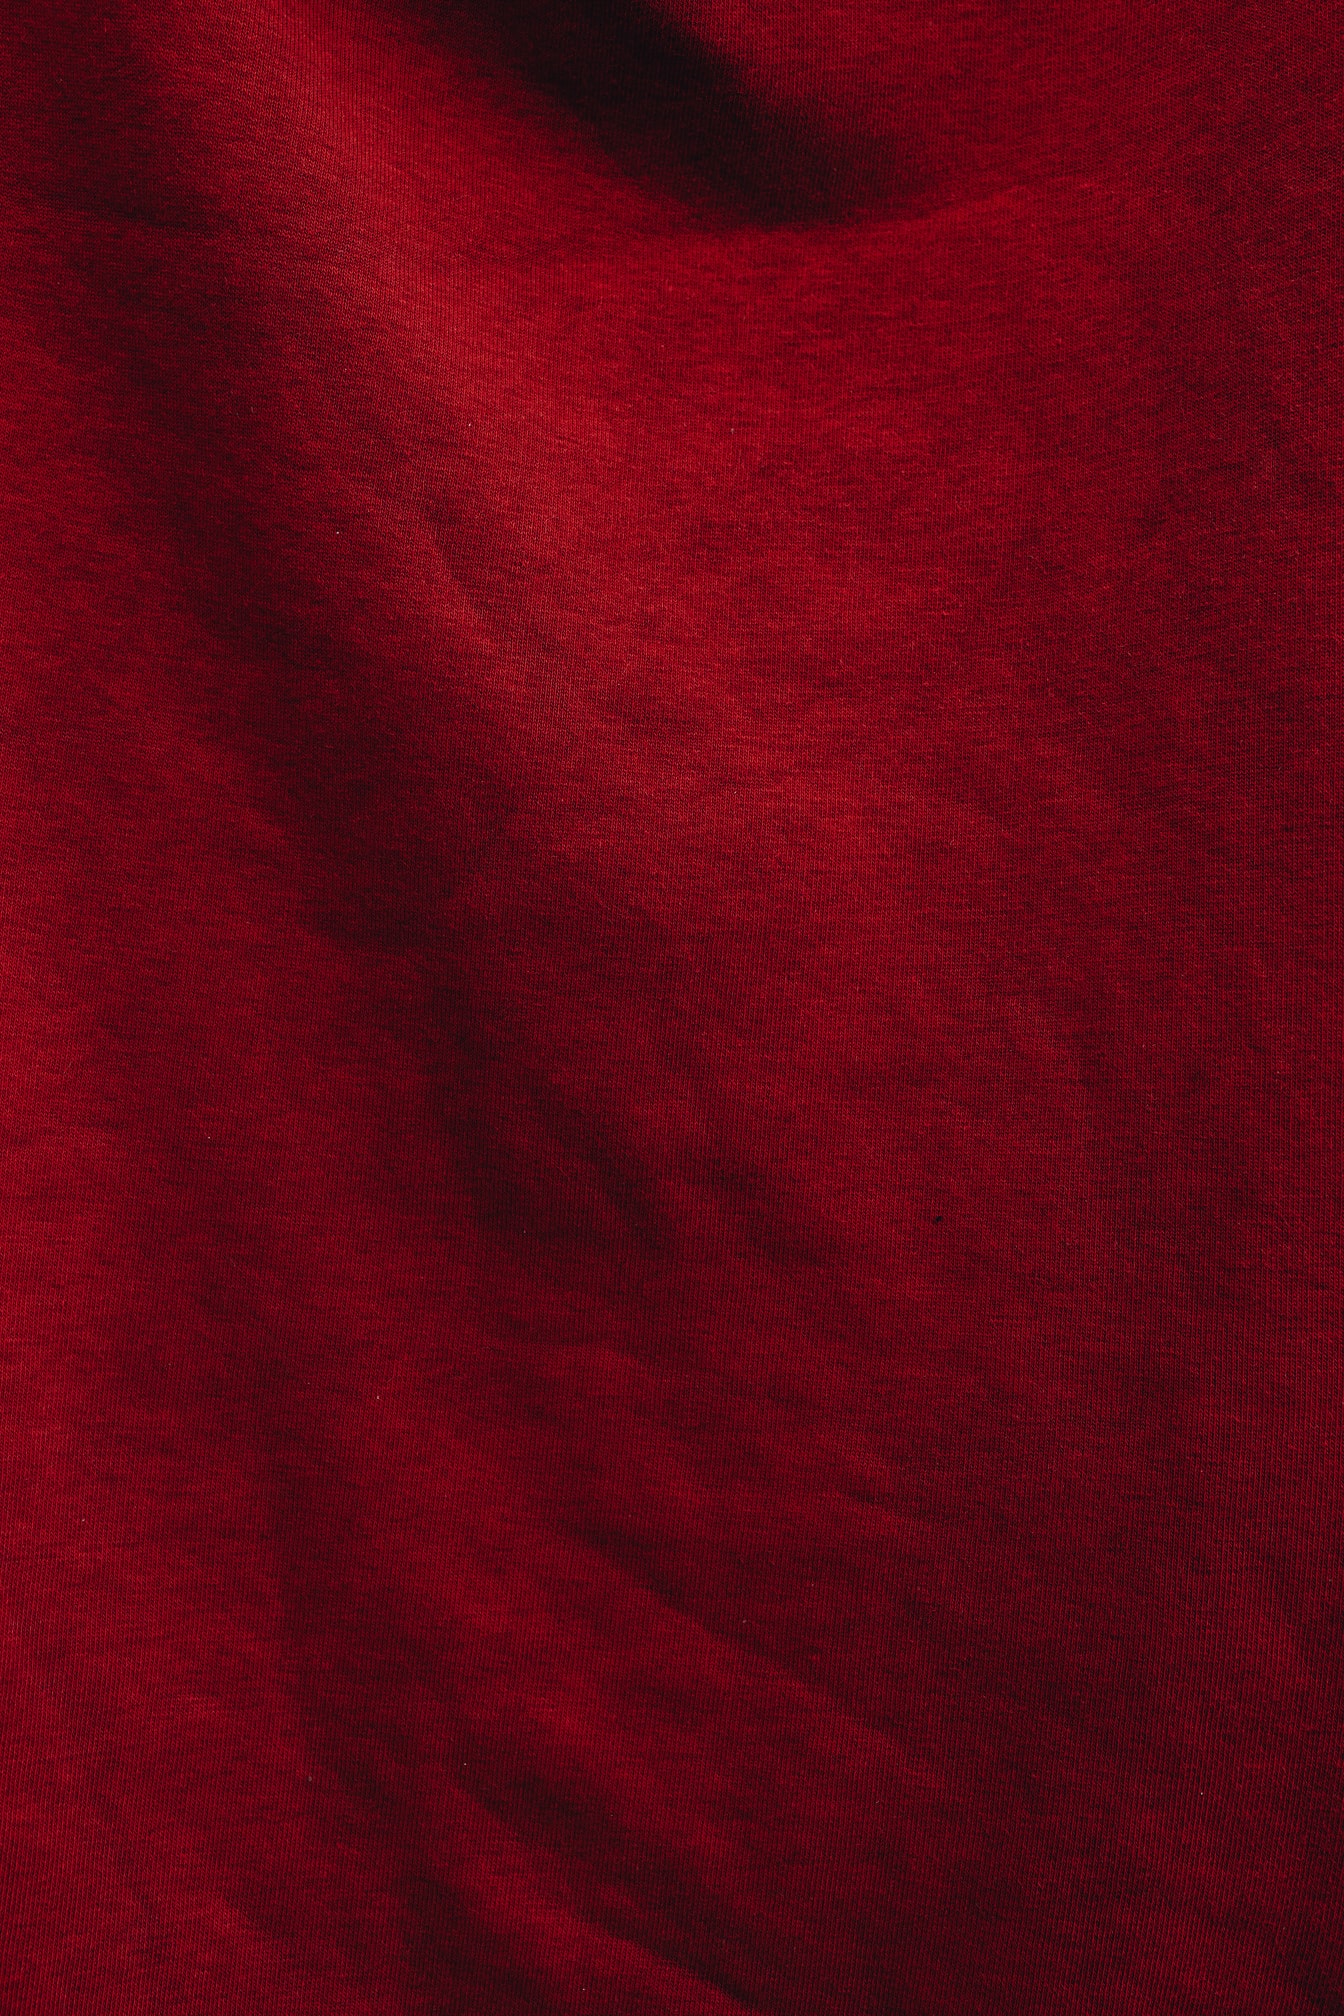 ผ้าฝ้ายสีแดงเข้มในเนื้อเงา